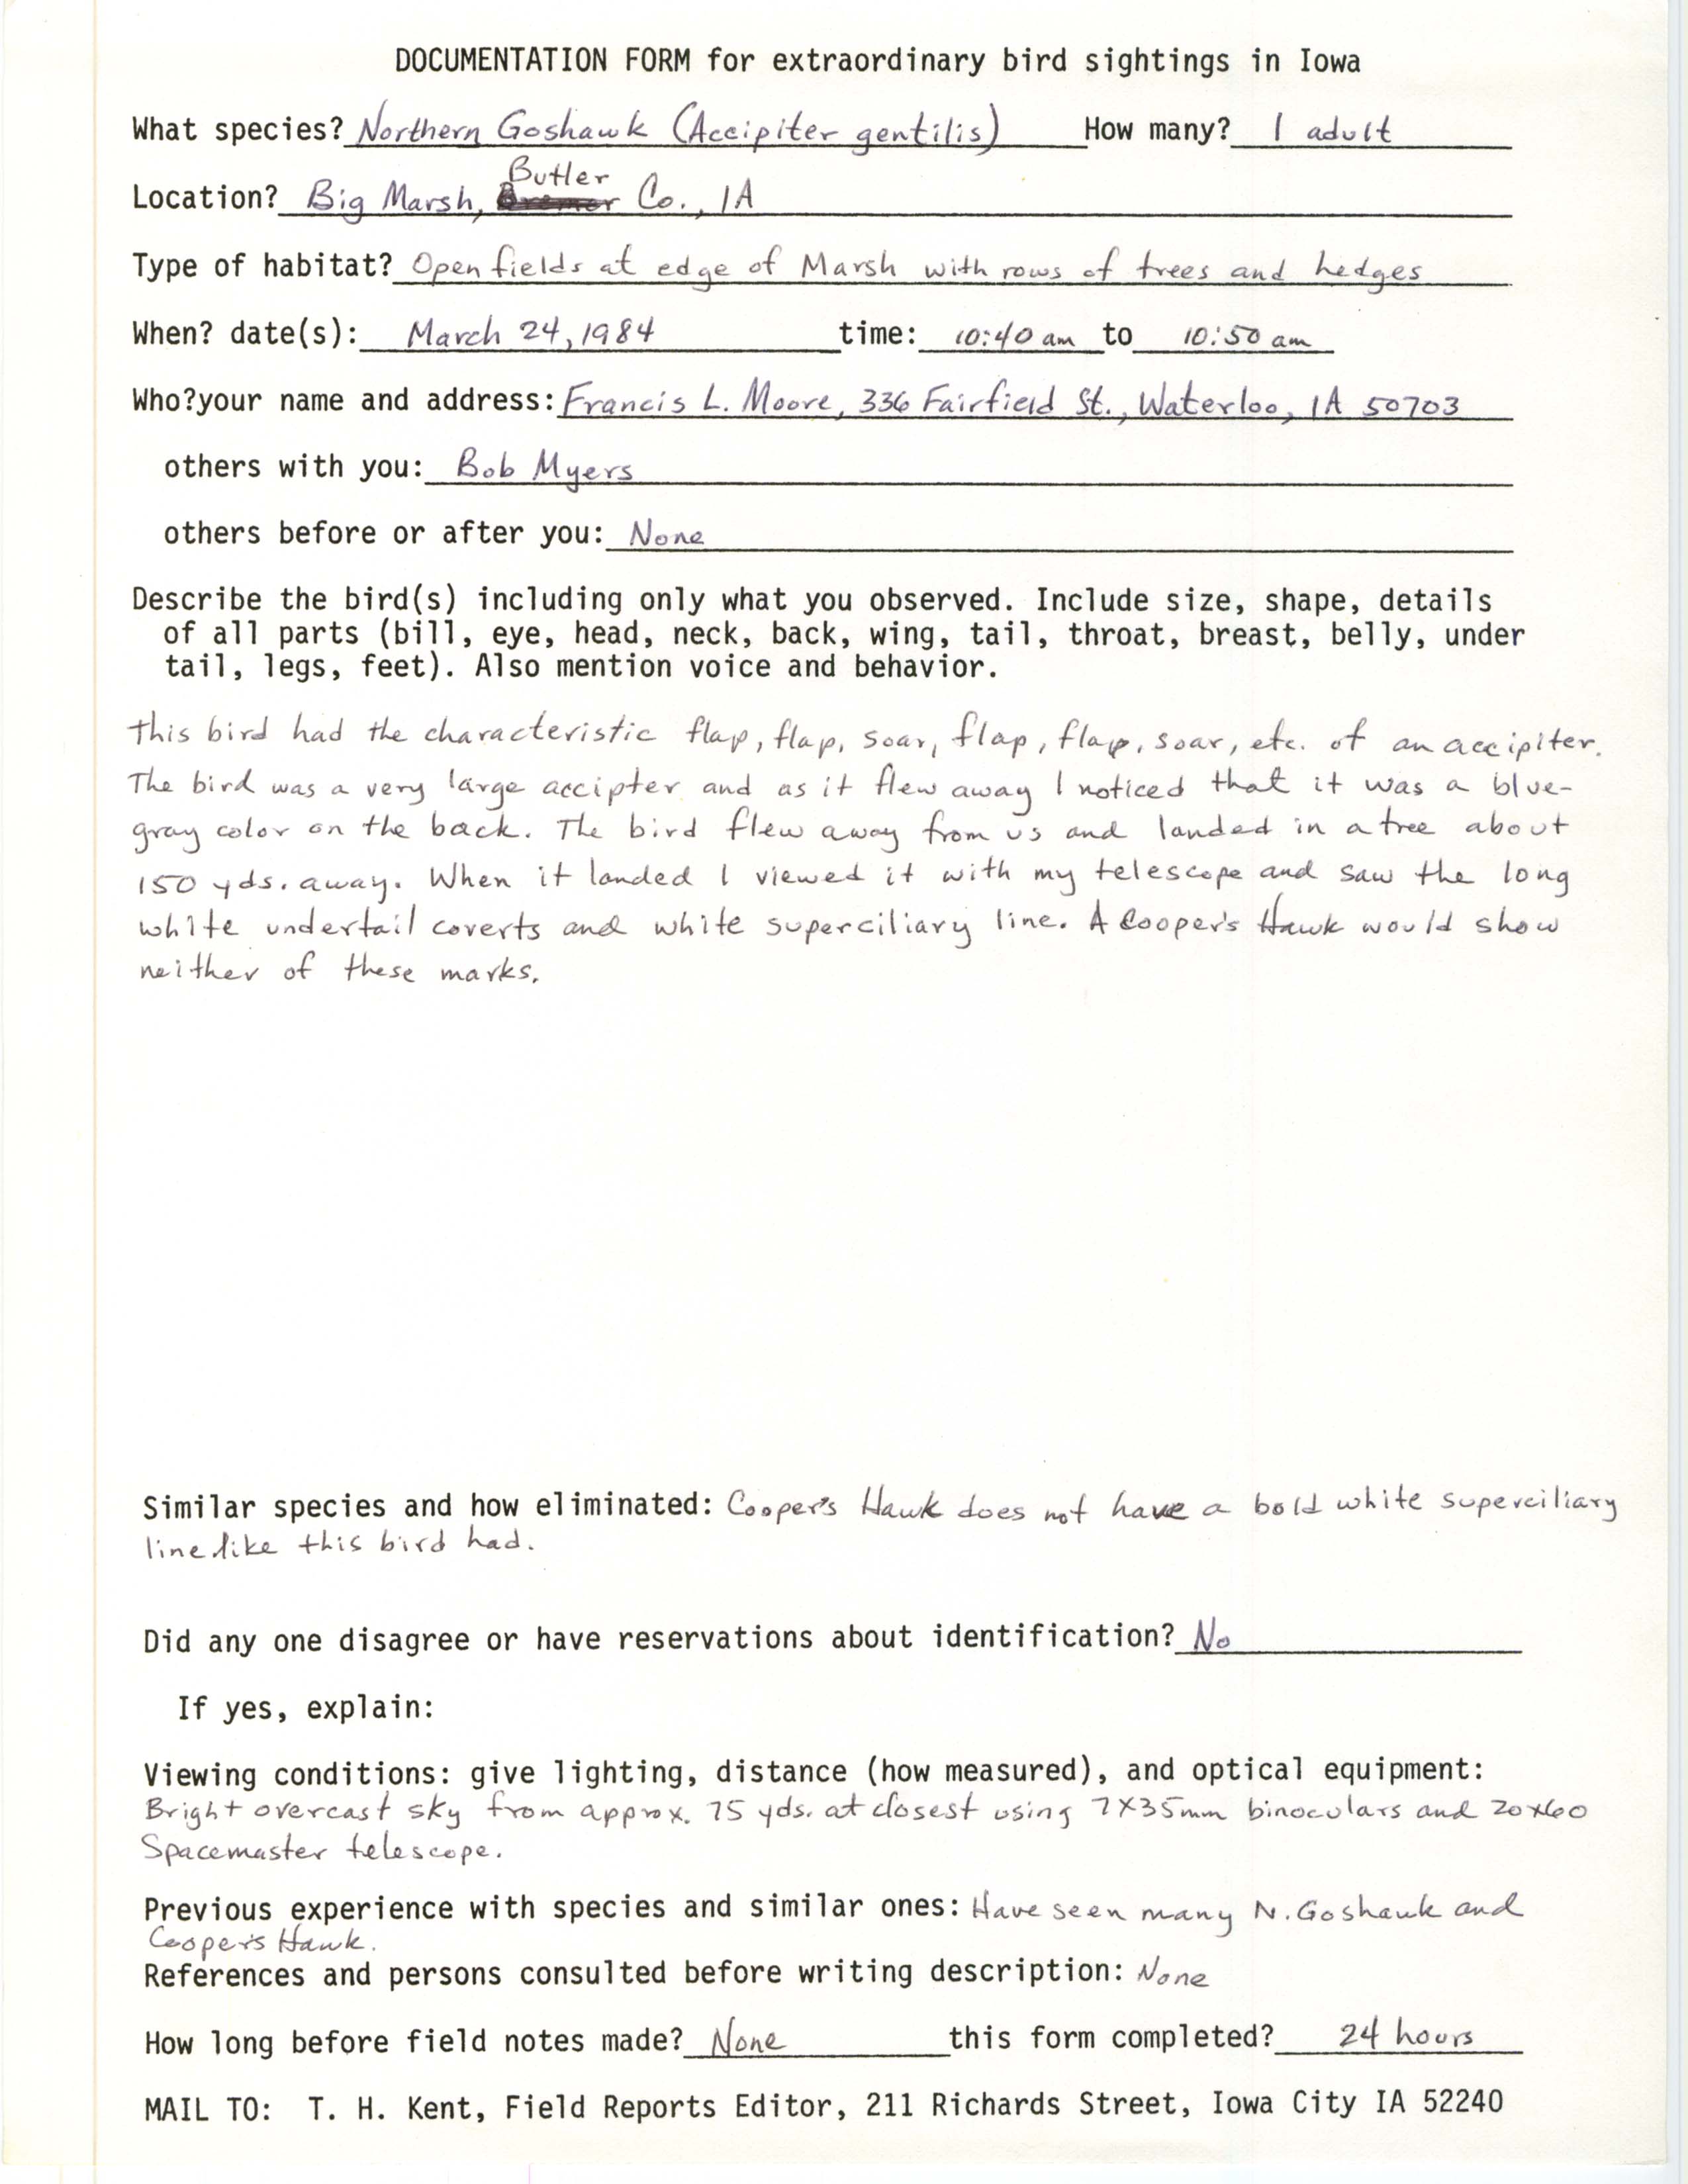 Rare bird documentation form for Northern Goshawk at Big Marsh, 1984